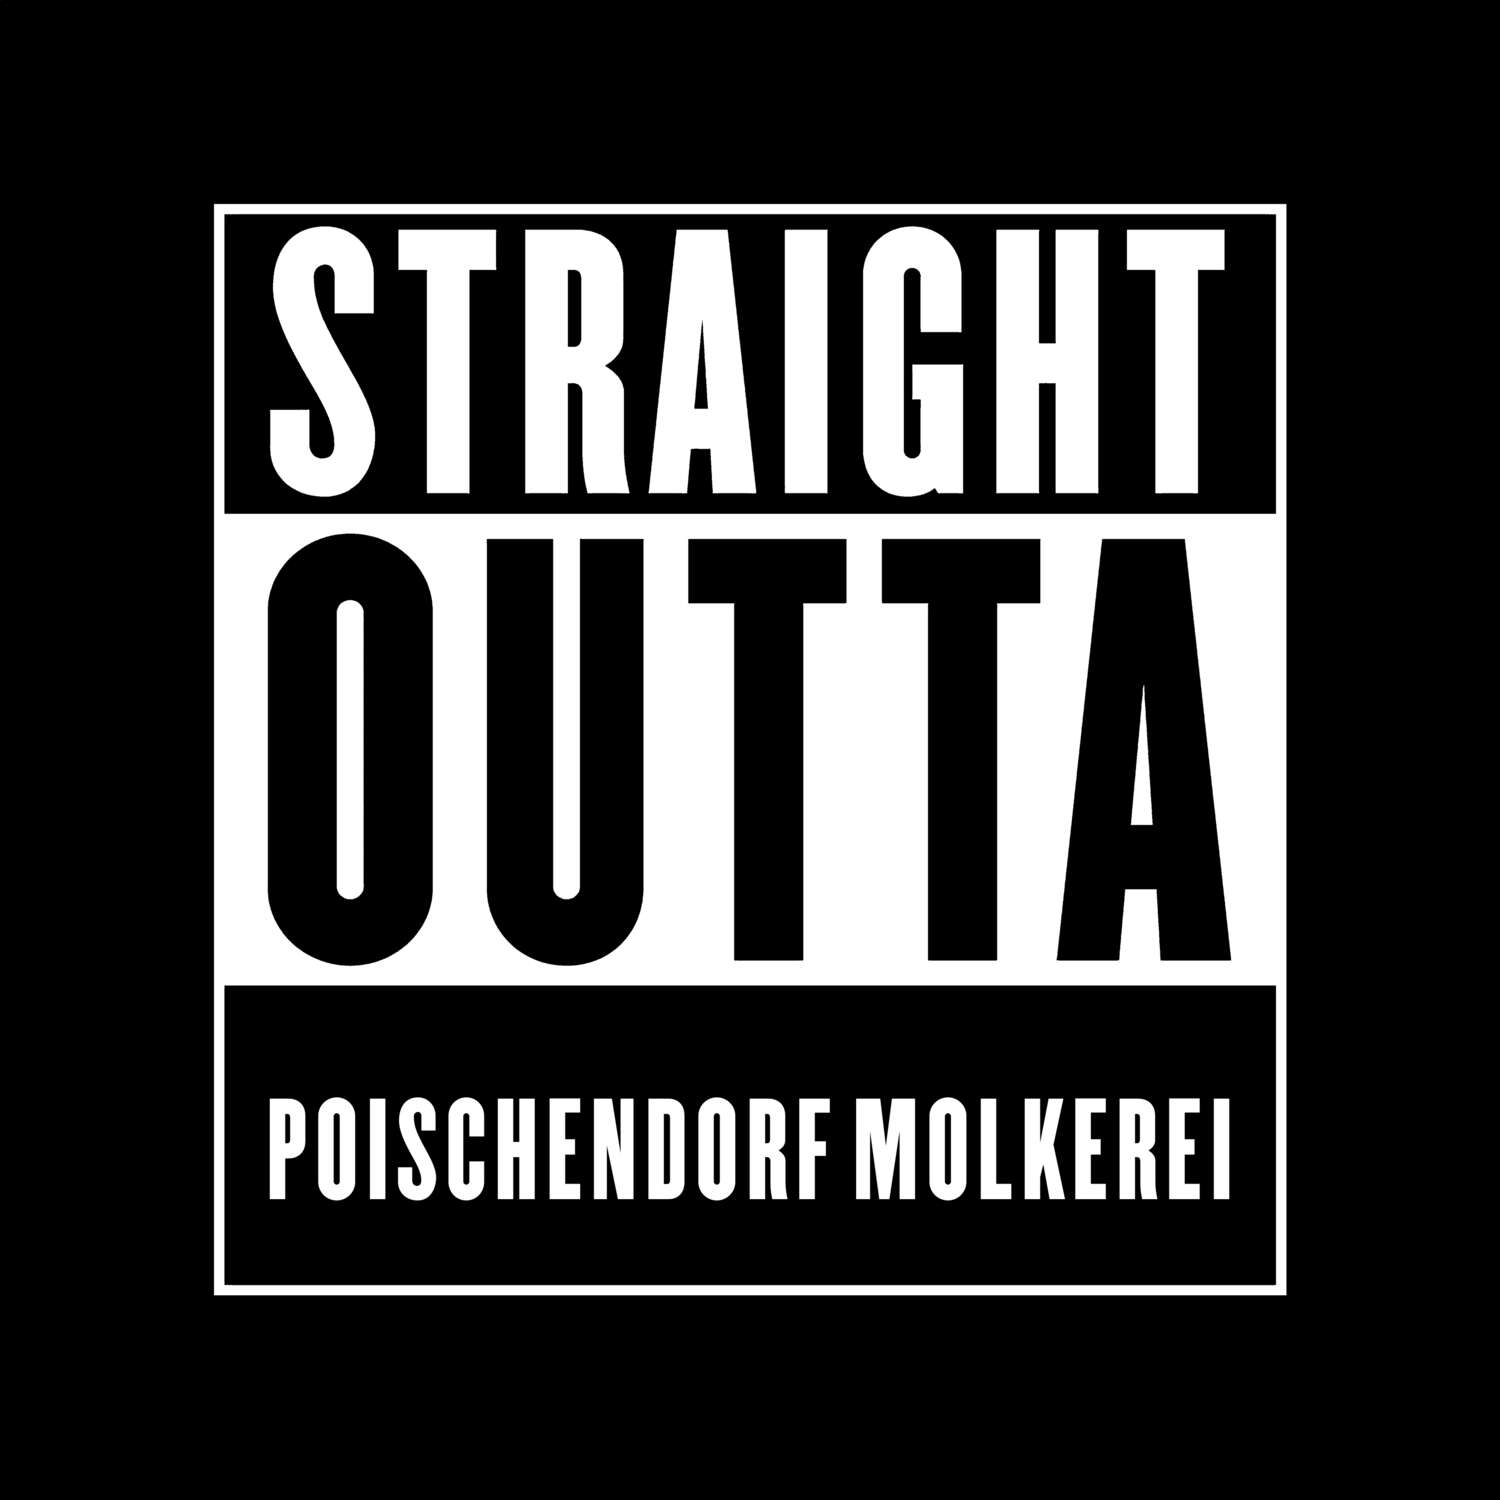 Poischendorf Molkerei T-Shirt »Straight Outta«